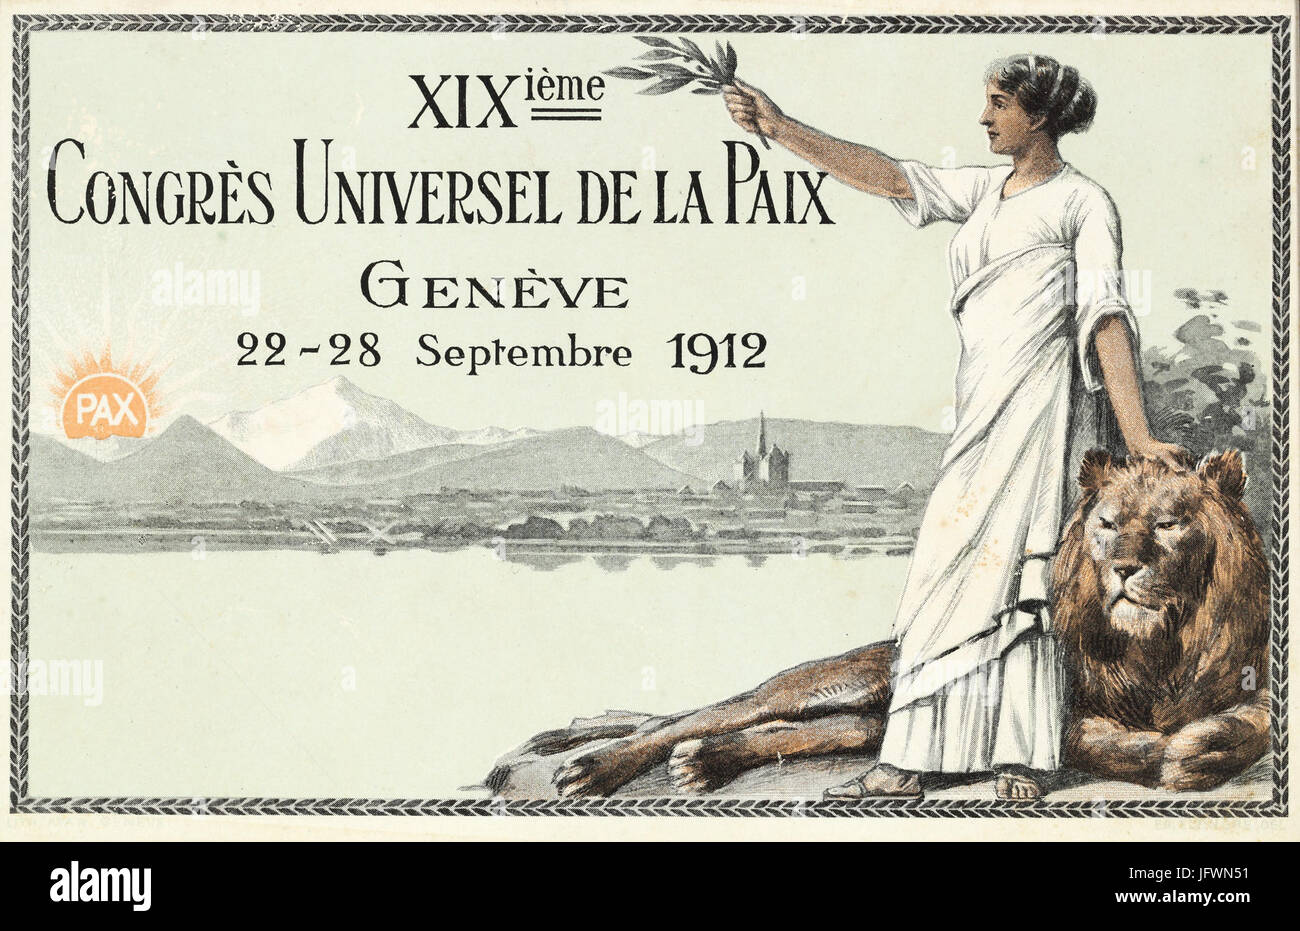 Carte postale du XIXème Congrès universel de la Paix à Genève Banque D'Images